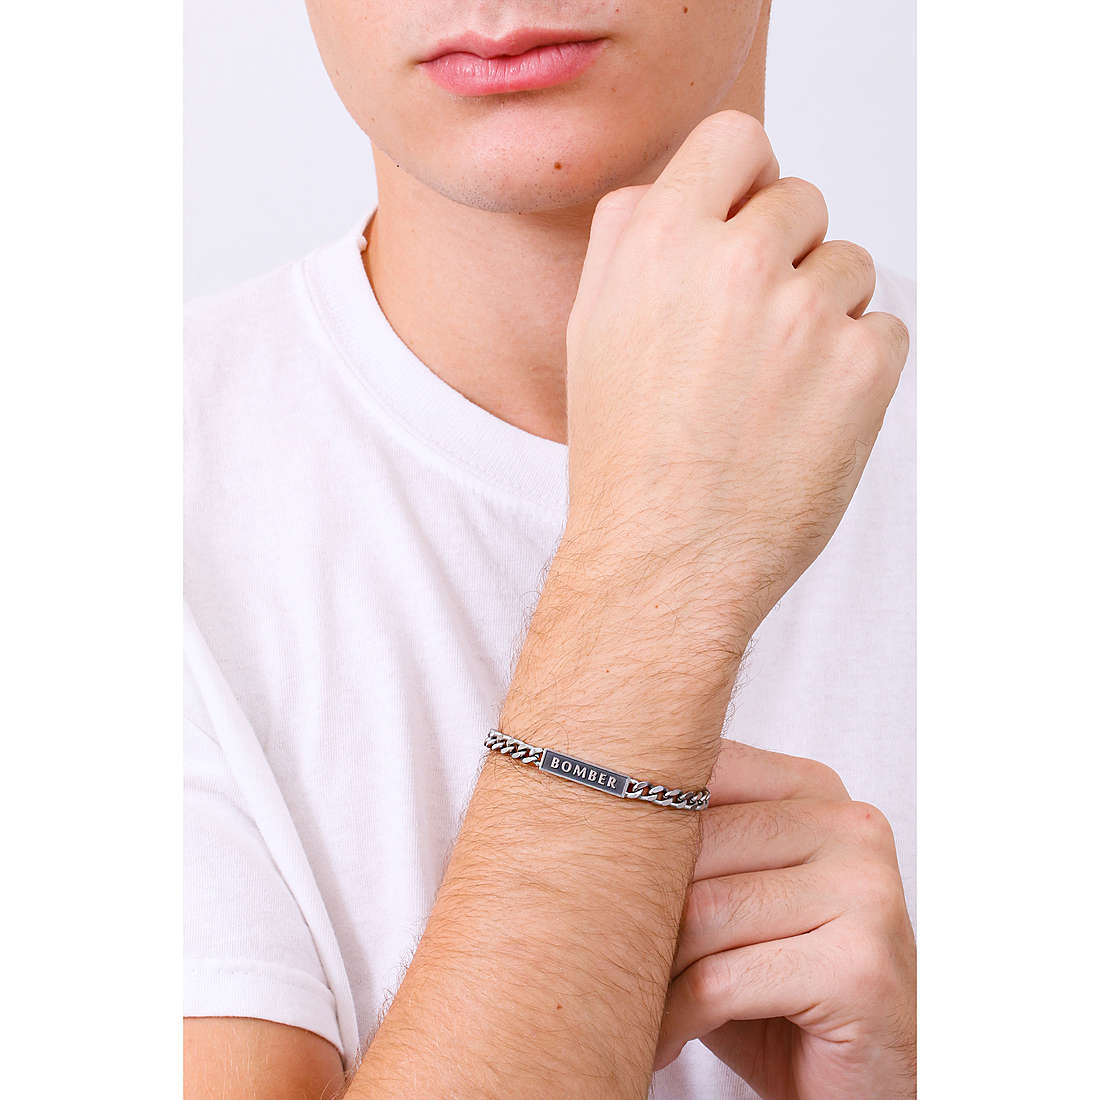 Kidult bracelets Free Time man 731801 wearing